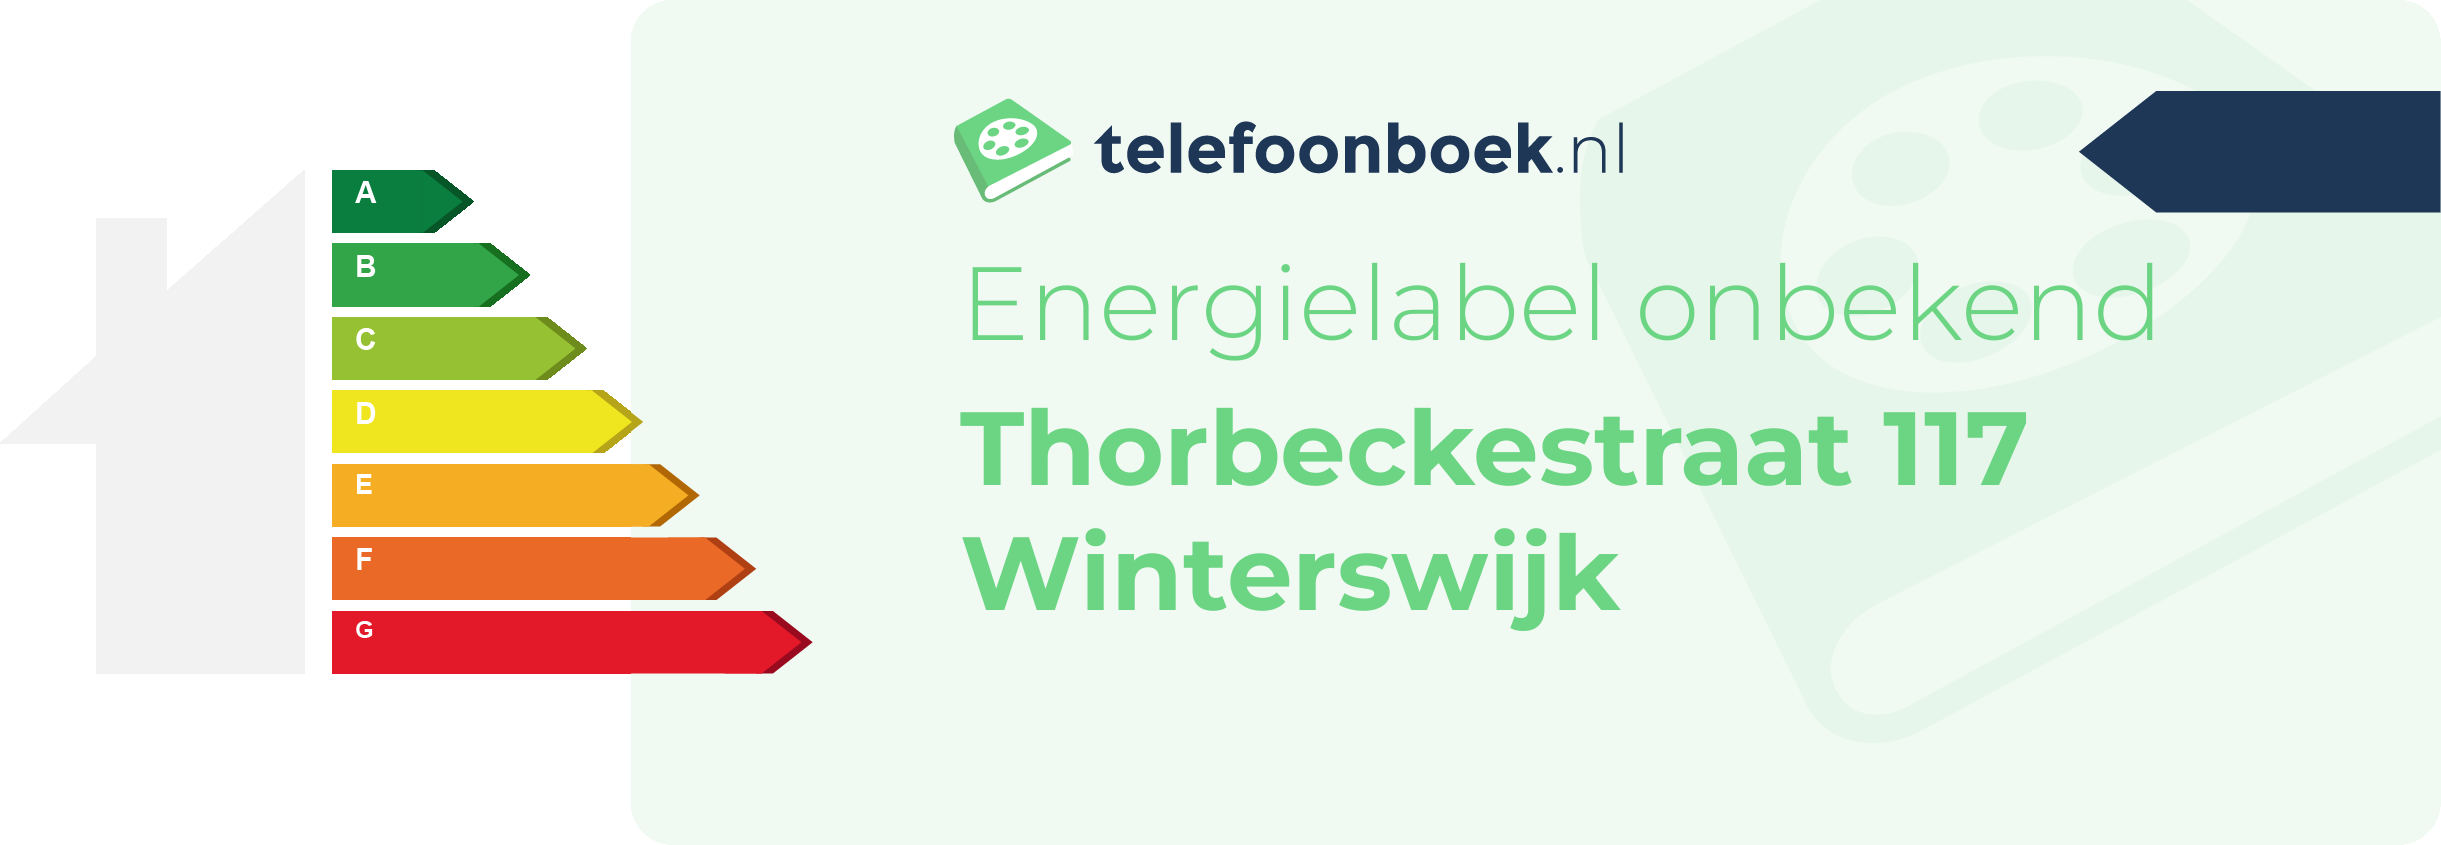 Energielabel Thorbeckestraat 117 Winterswijk